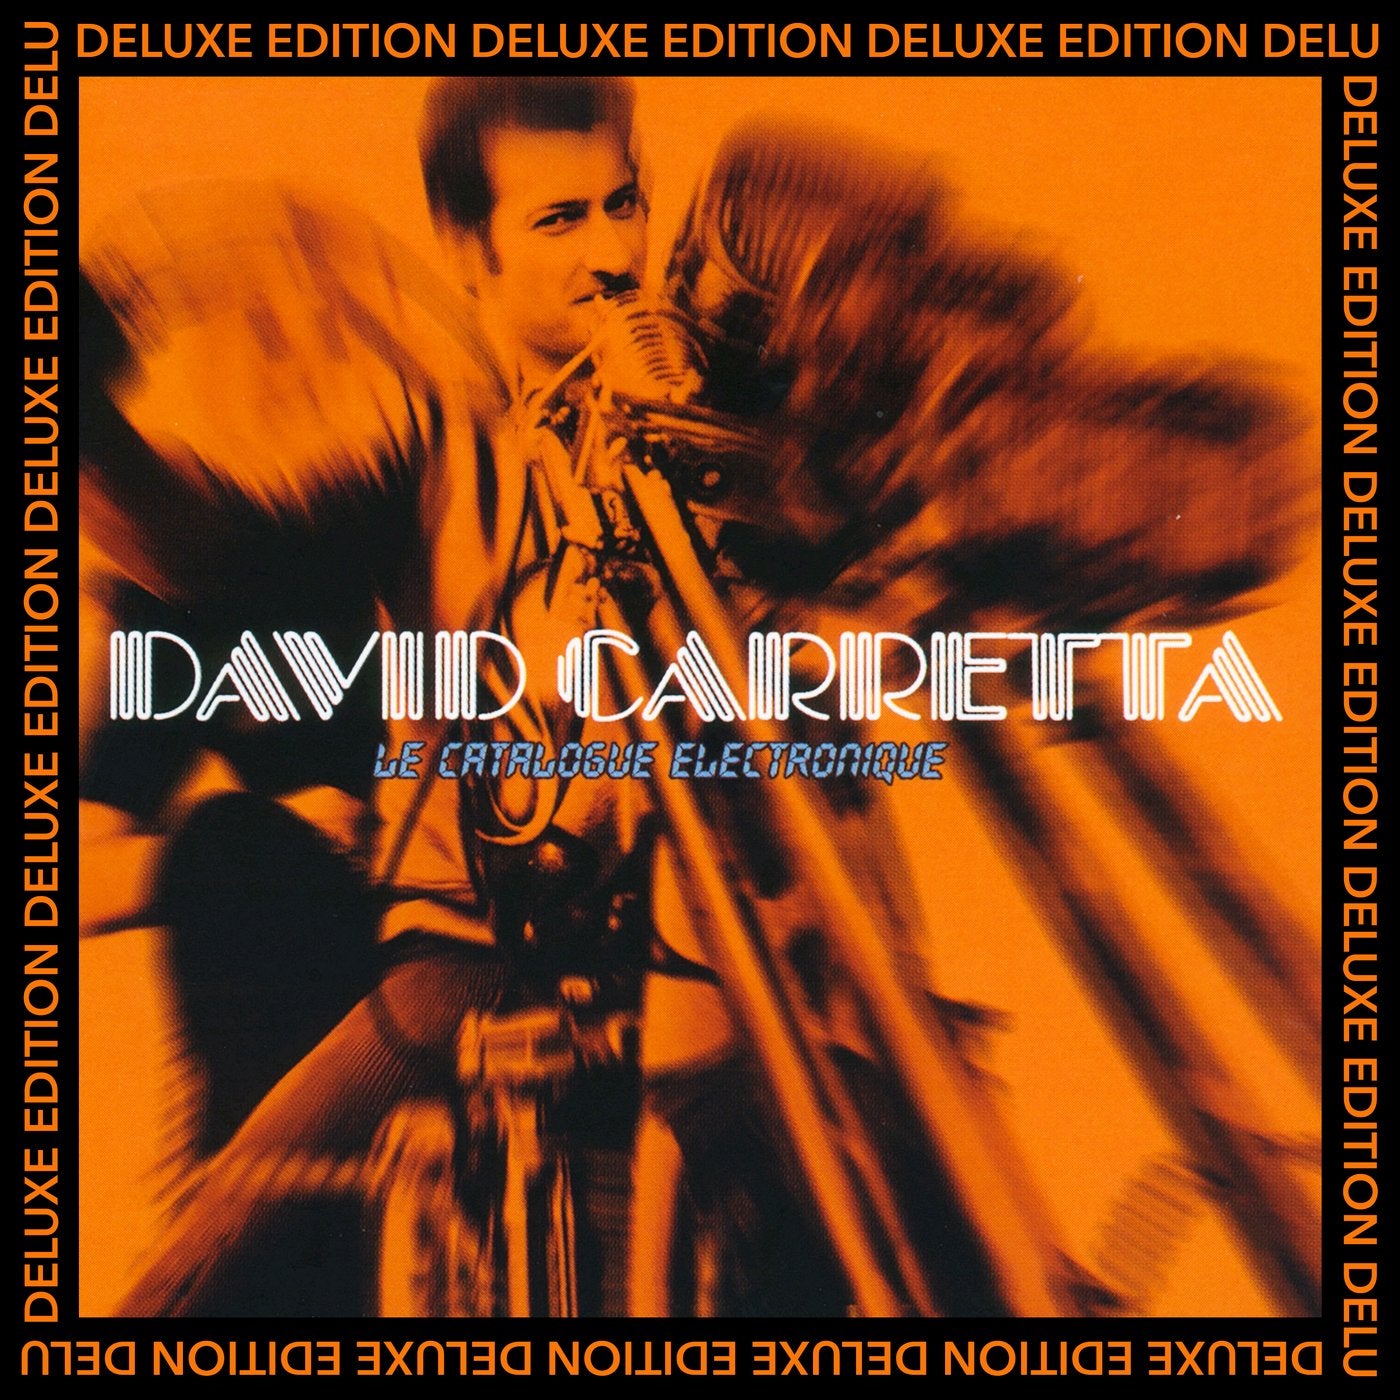 image cover: David Carretta - Le catalogue electronique (Deluxe Edition) / SF60